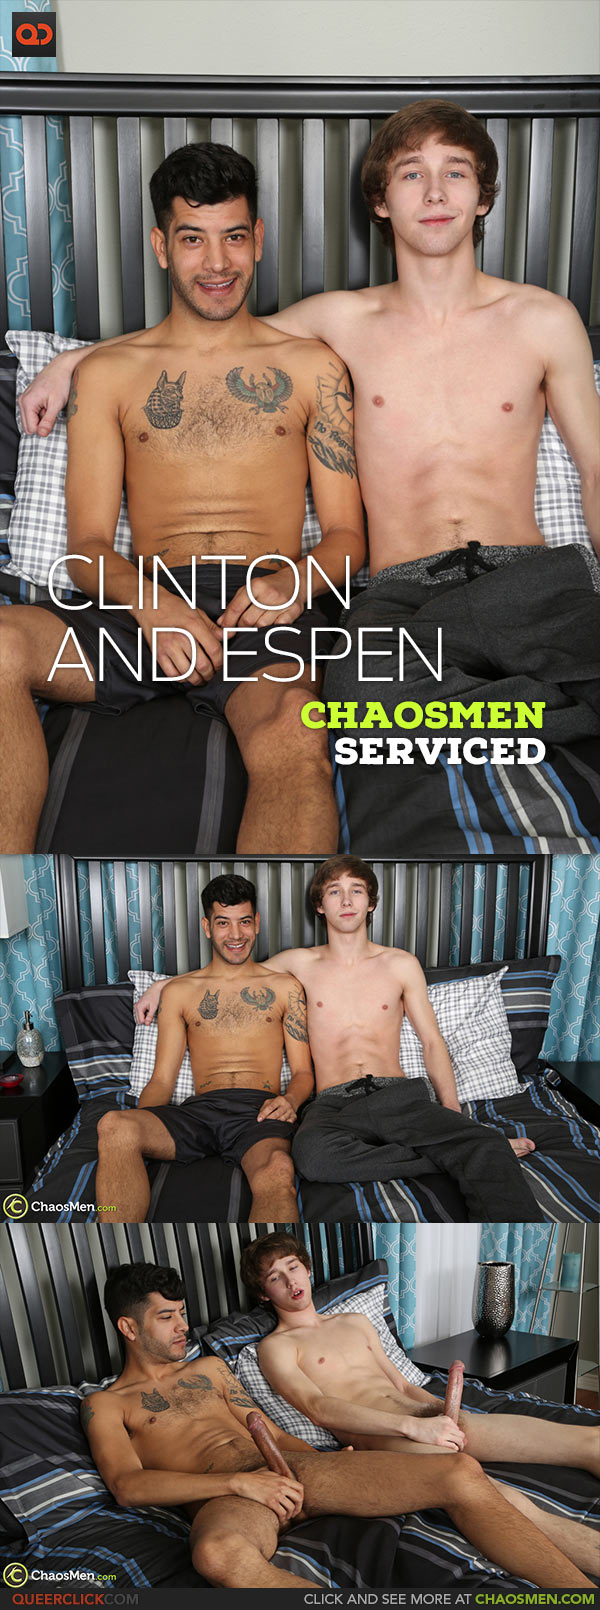 ChaosMen: Clinton and Espen - Serviced